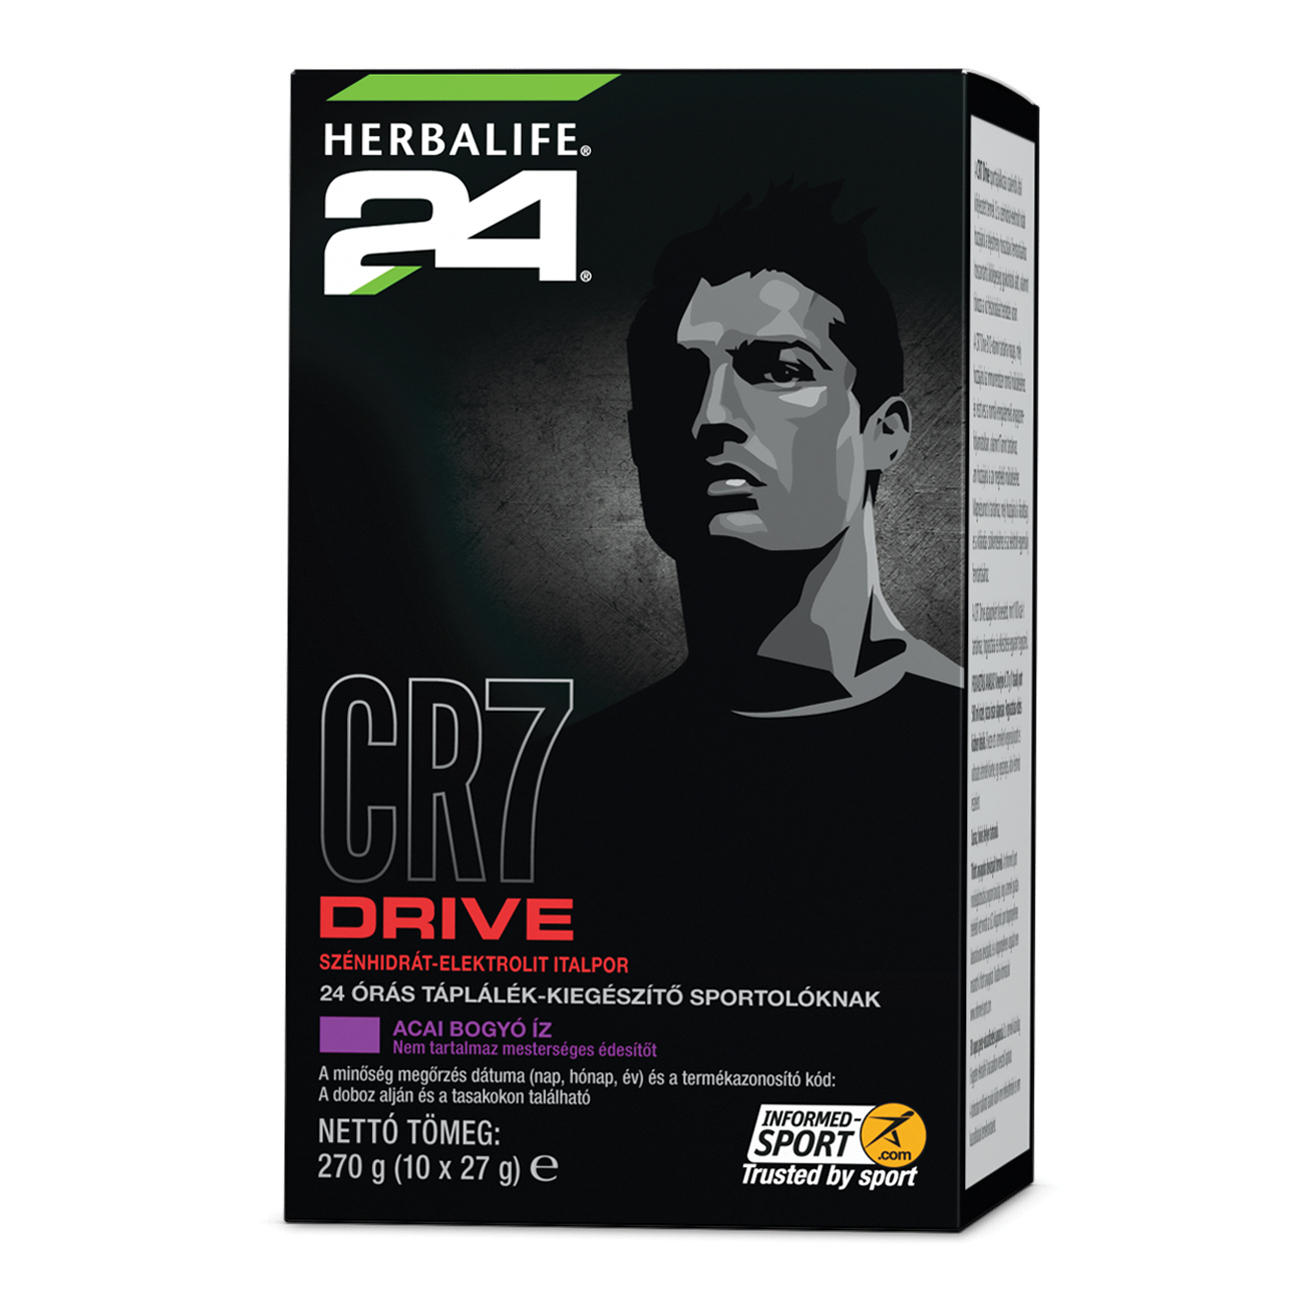 Herbalife24® CR7 Drive sportital acai bogyó termékkép